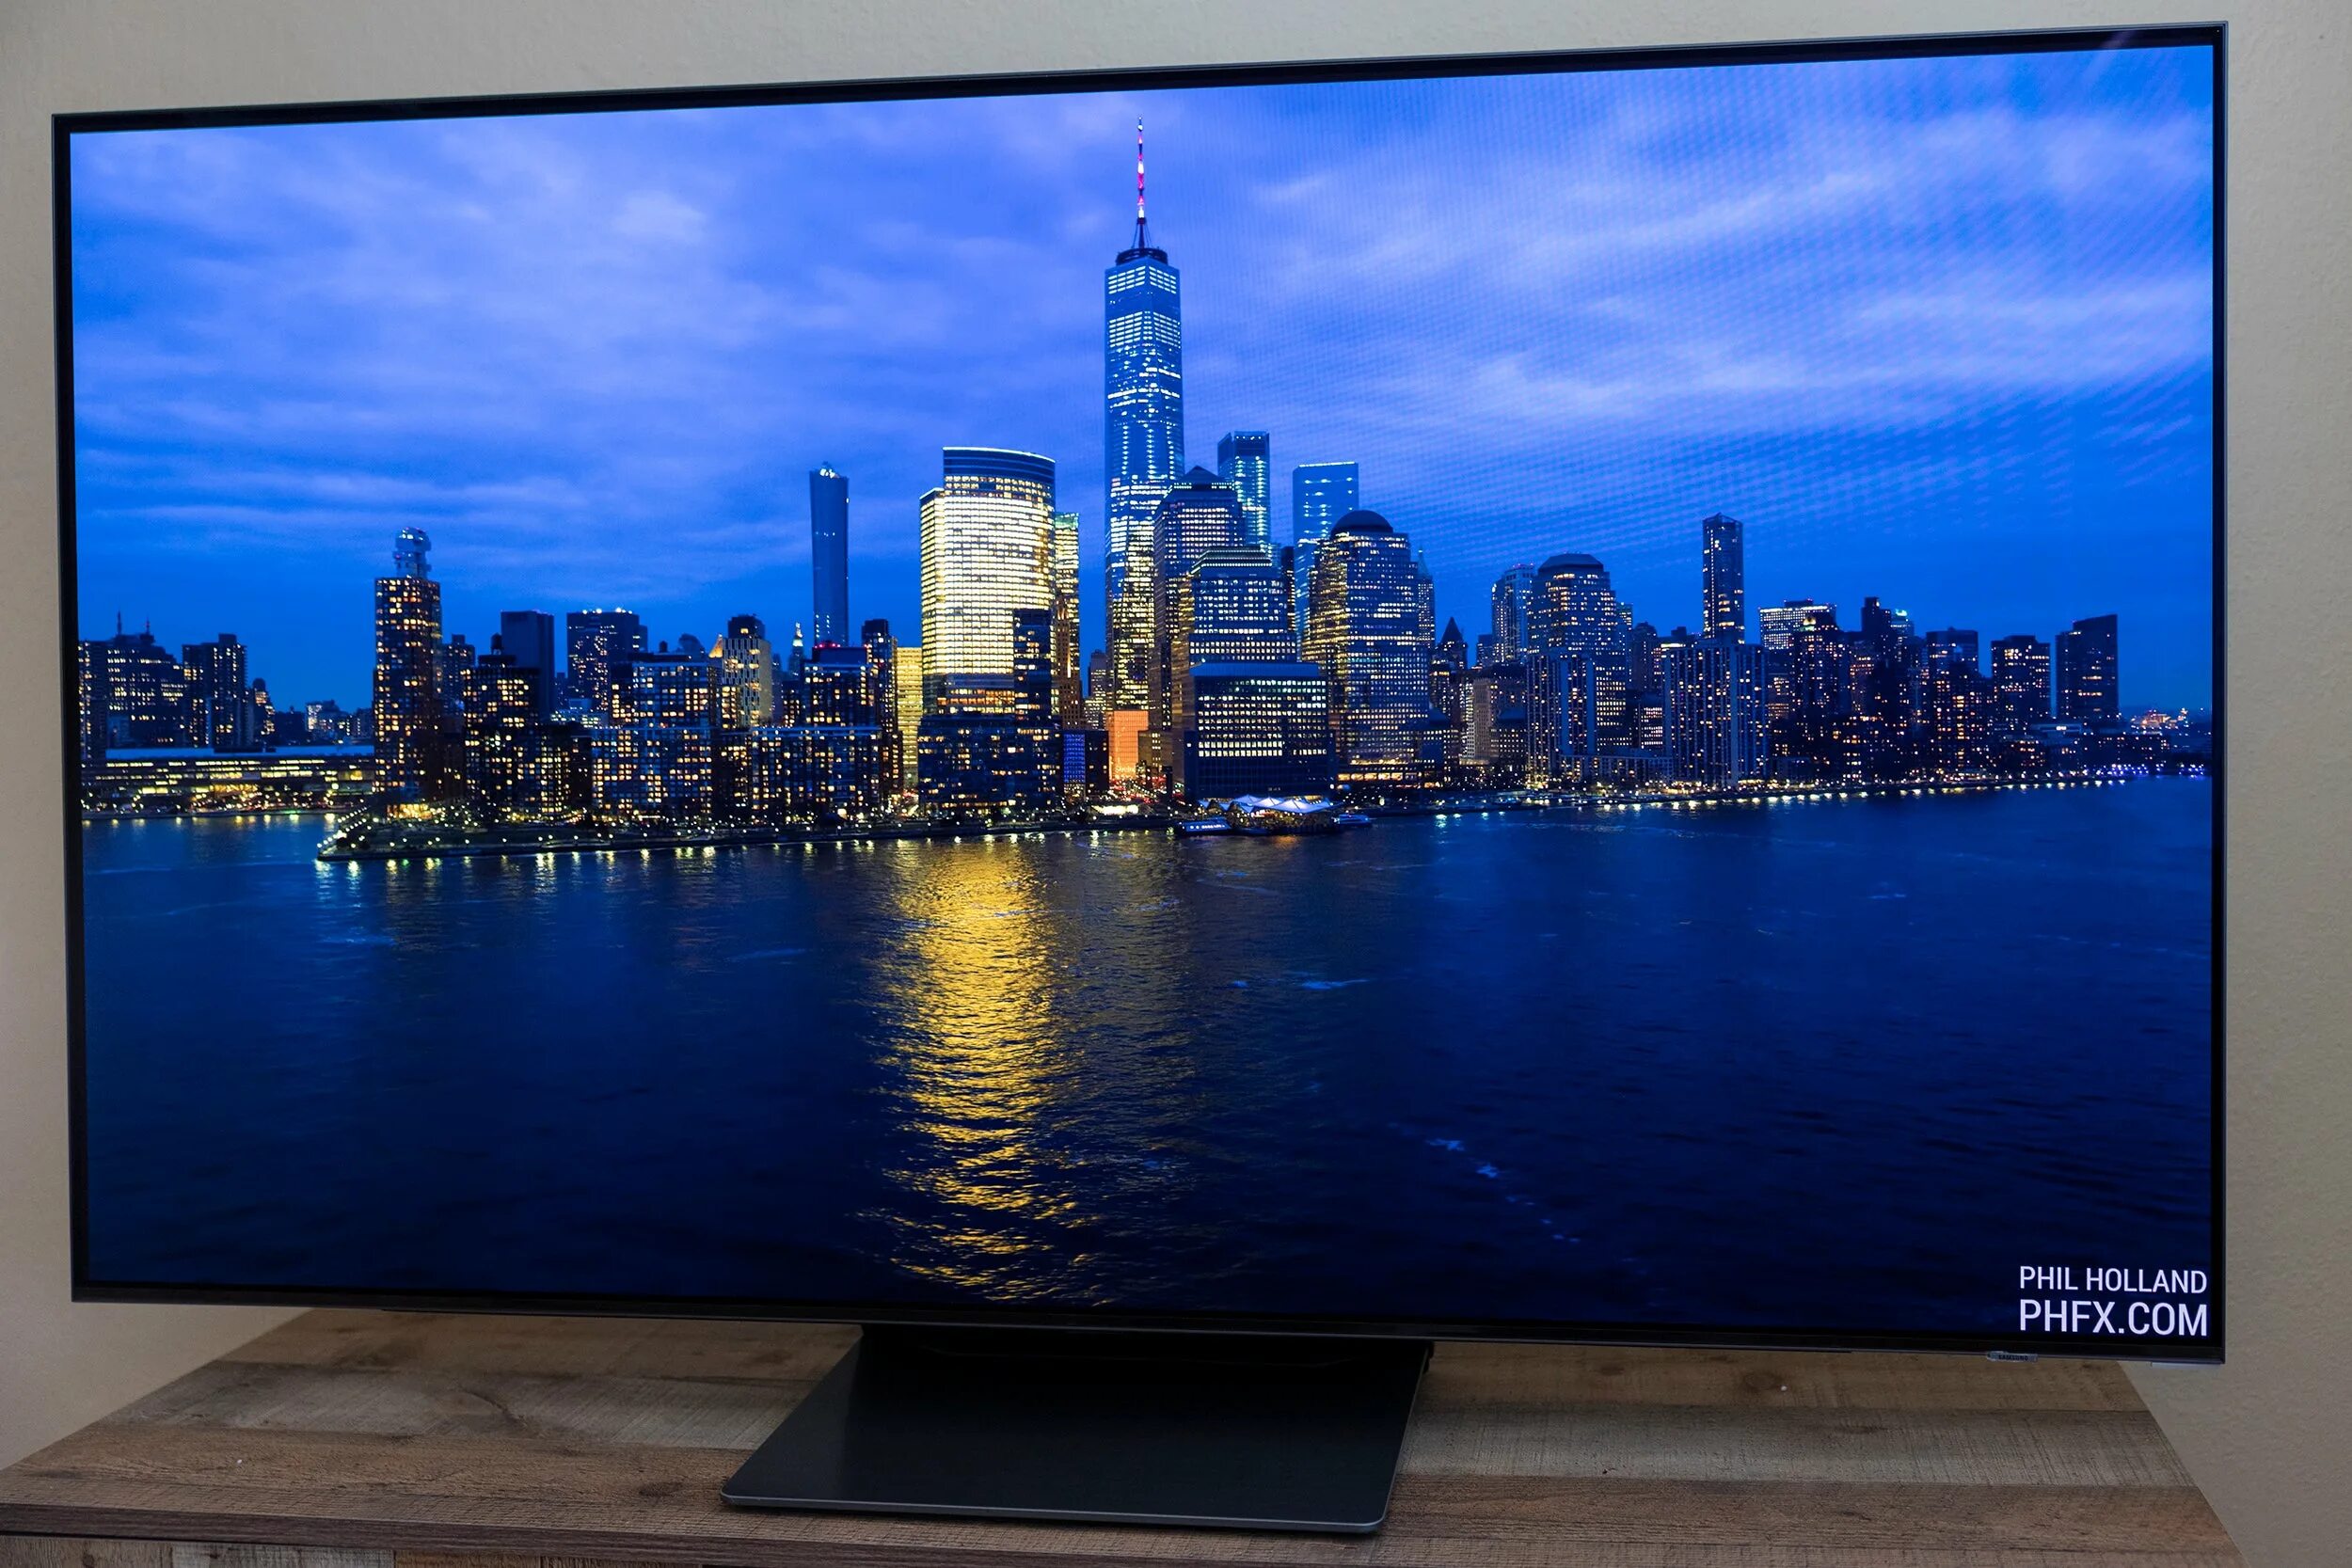 55 телевизор haier s9 ultra. Samsung s95b OLED. Телевизор самсунг олед. Samsung OLED 95b. Телевизор Haier 65 OLED s9.